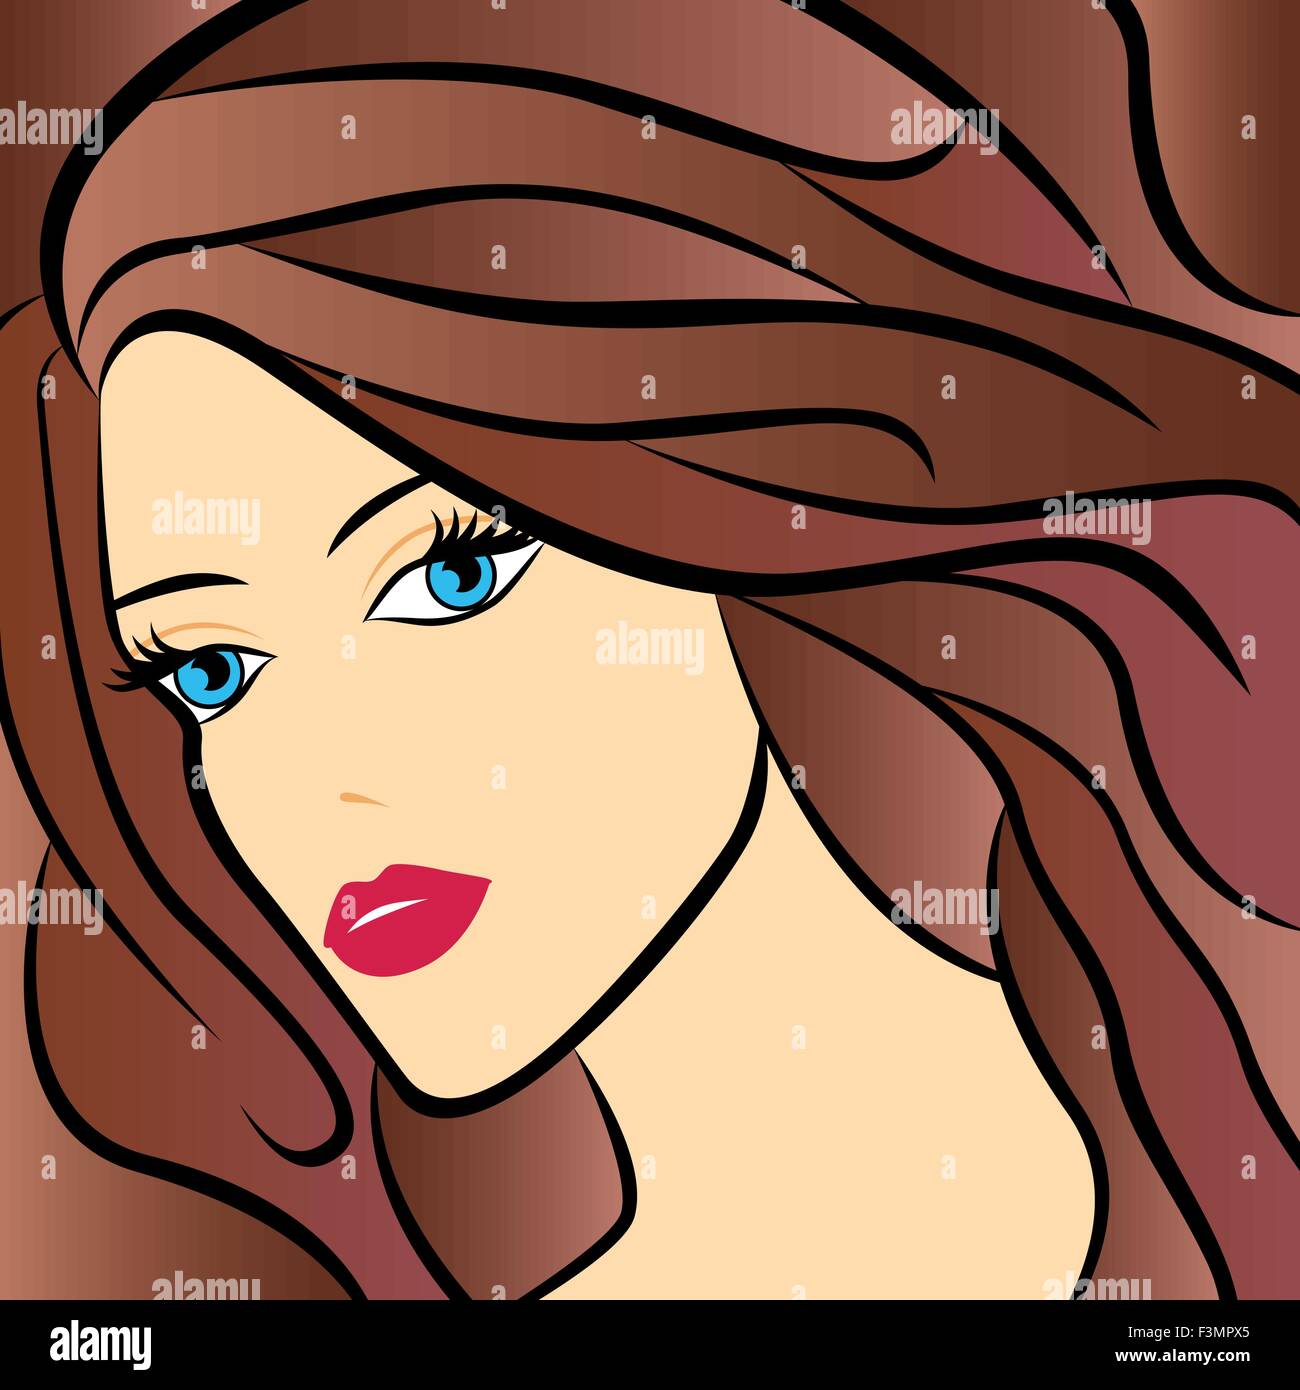 Abstract ritratto femminile con capelli castani e colorato disegno a mano oggetti grafici vettoriali Illustrazione Vettoriale